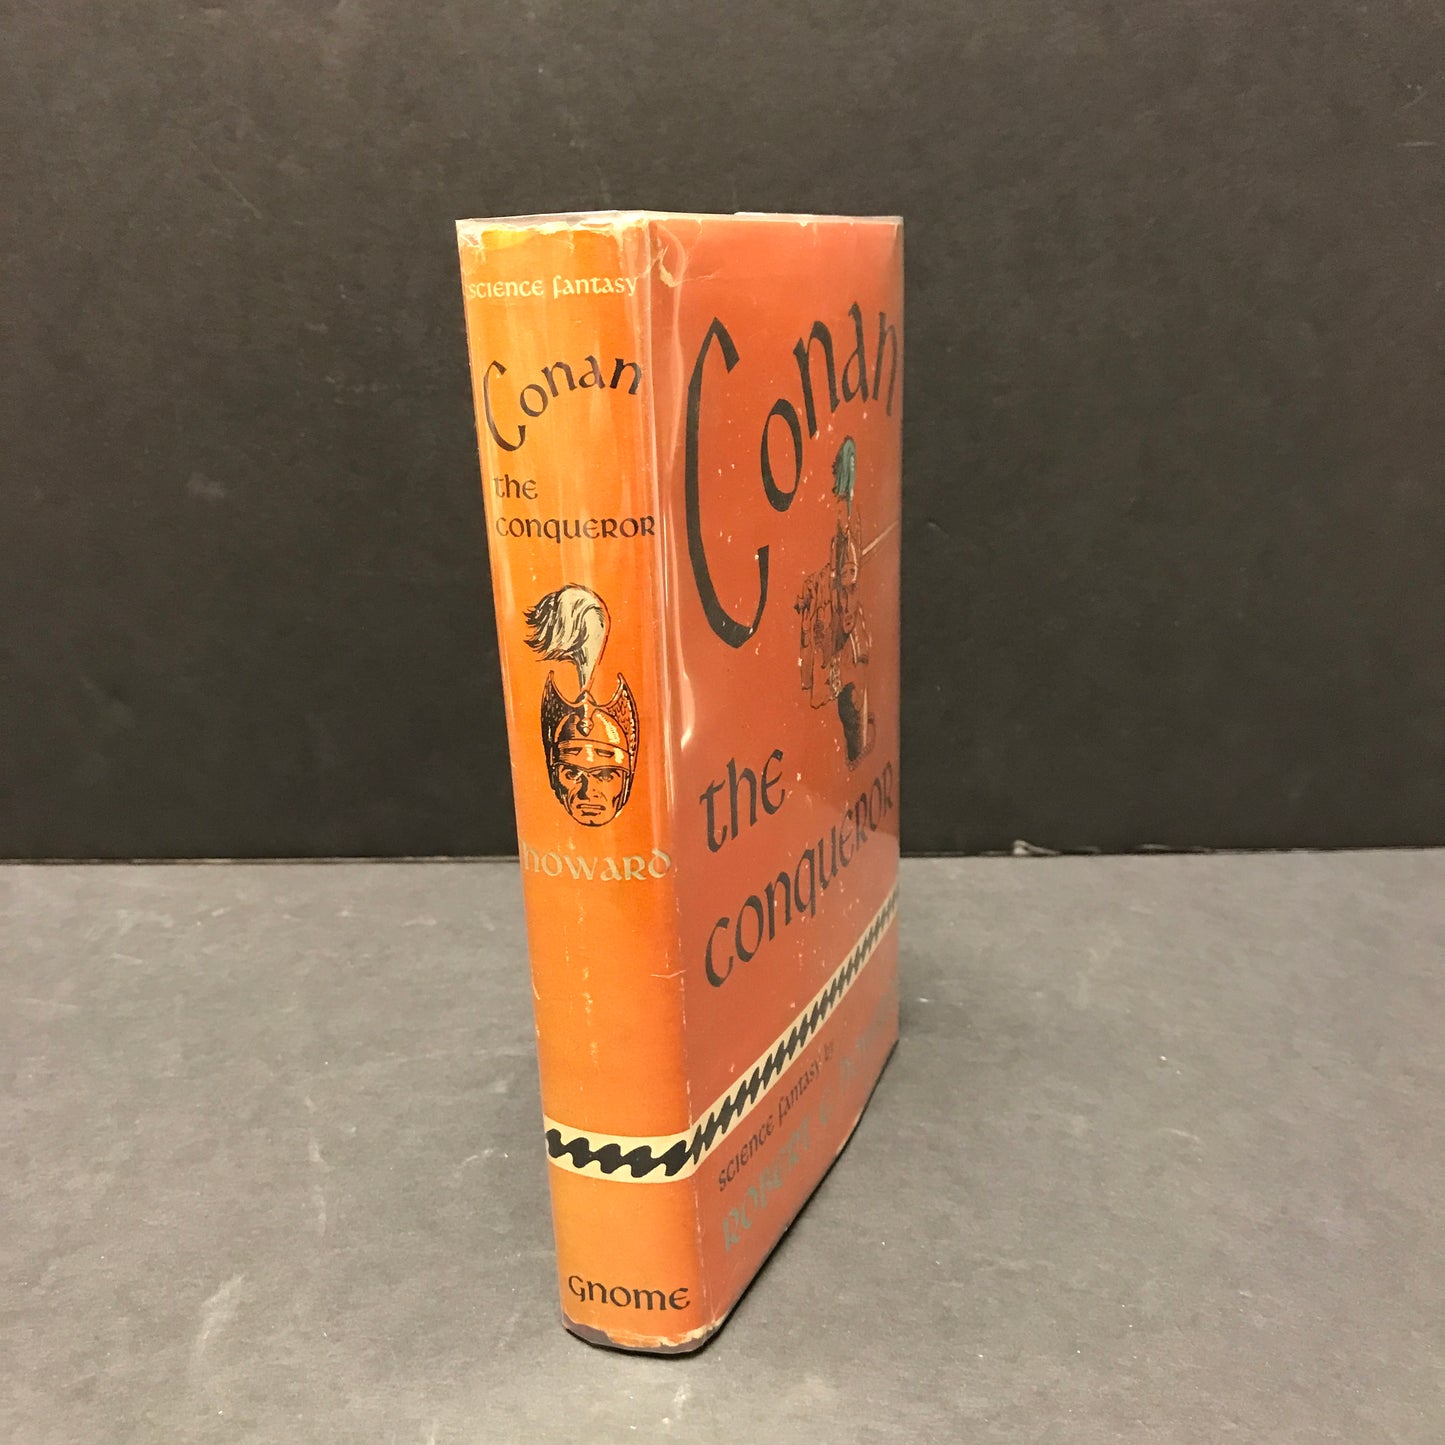 Conan The Conqueror - Robert E. Howard - First Edition - 1950